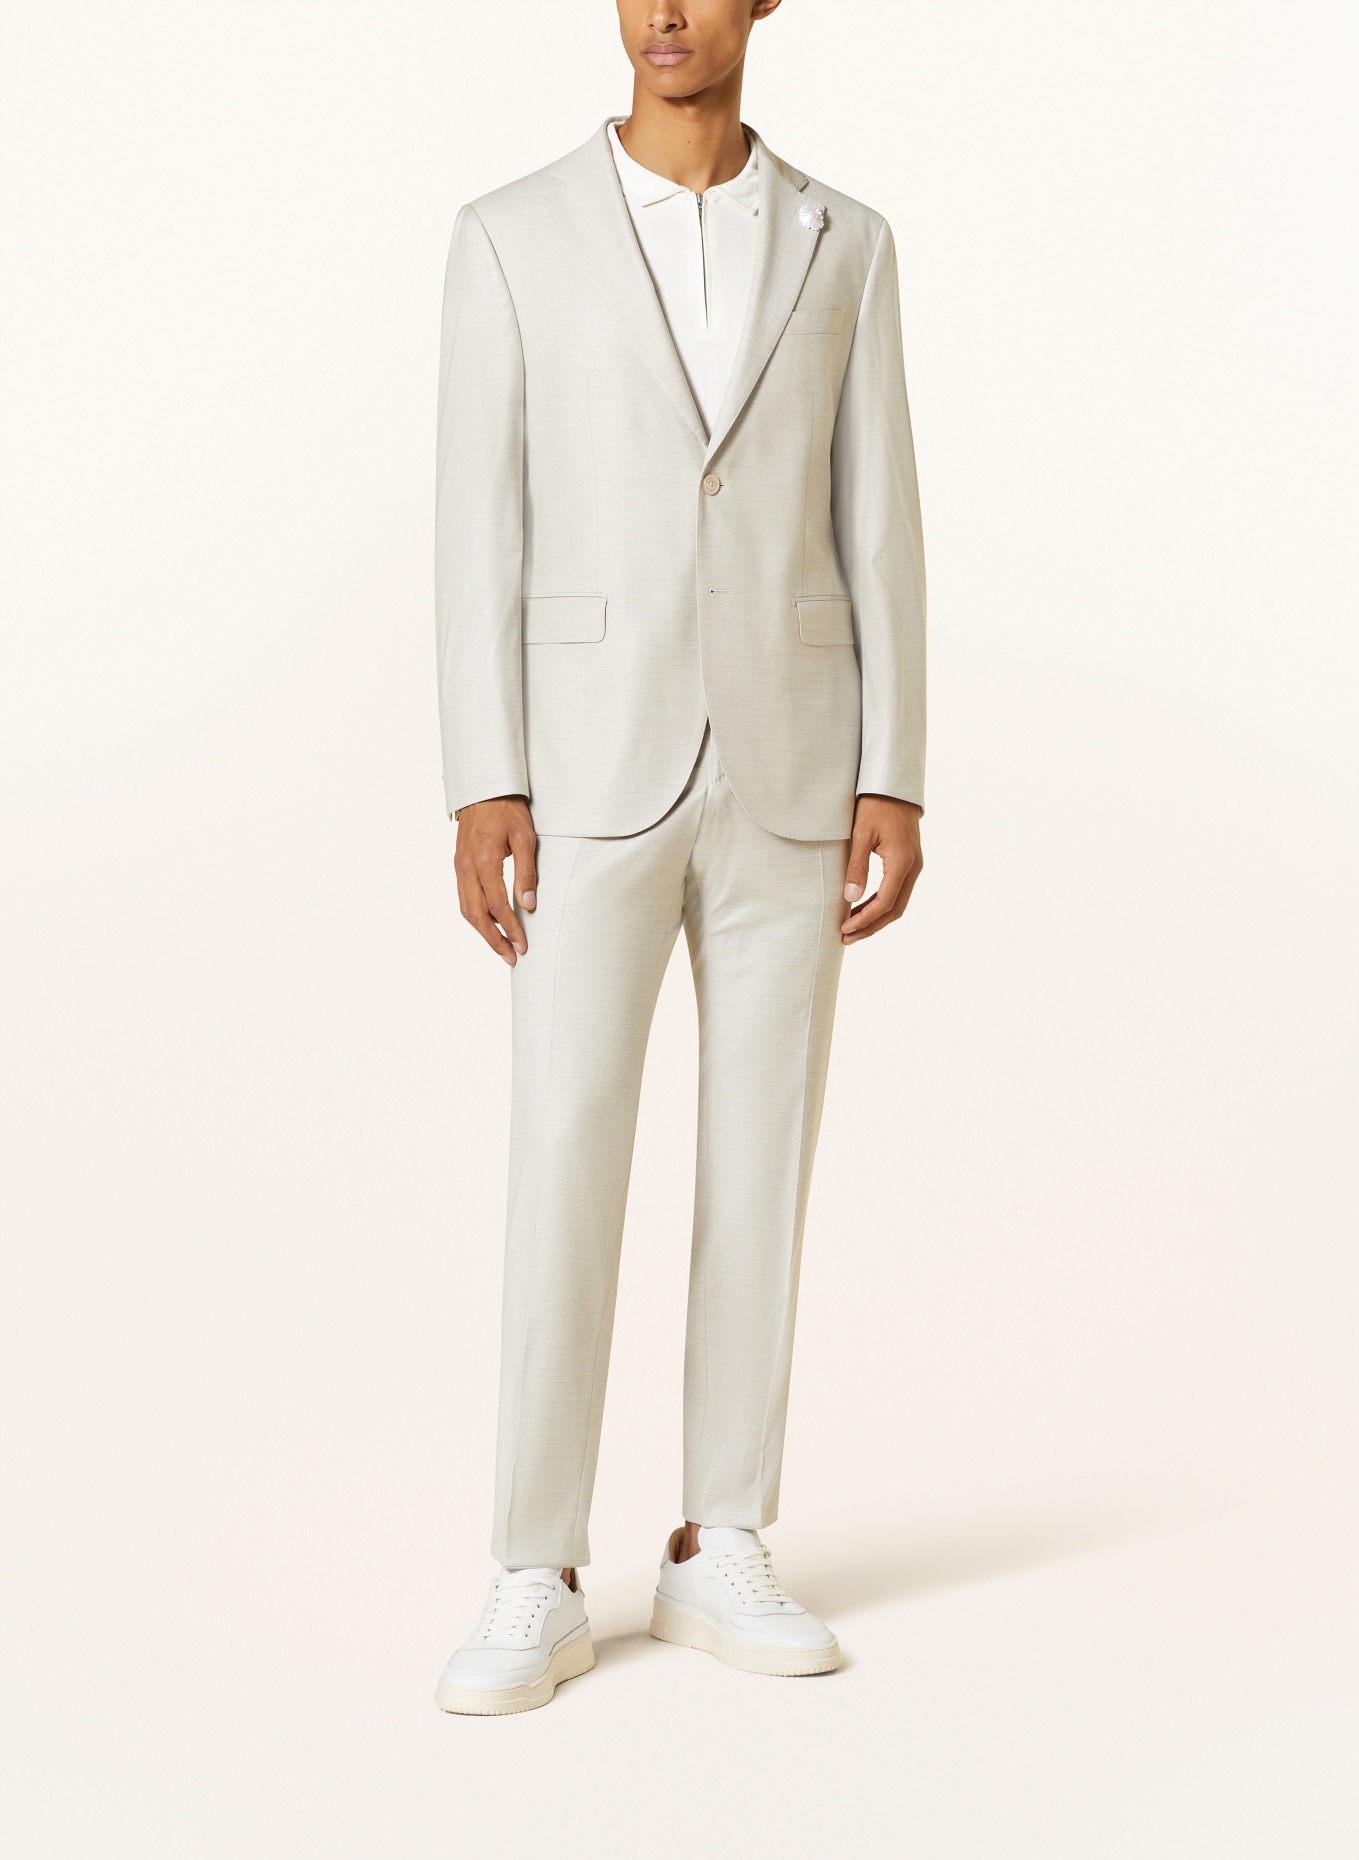 BALDESSARINI Suit jacket Slim Fit, Color: 8920 Irish Cream Pattern (Image 2)